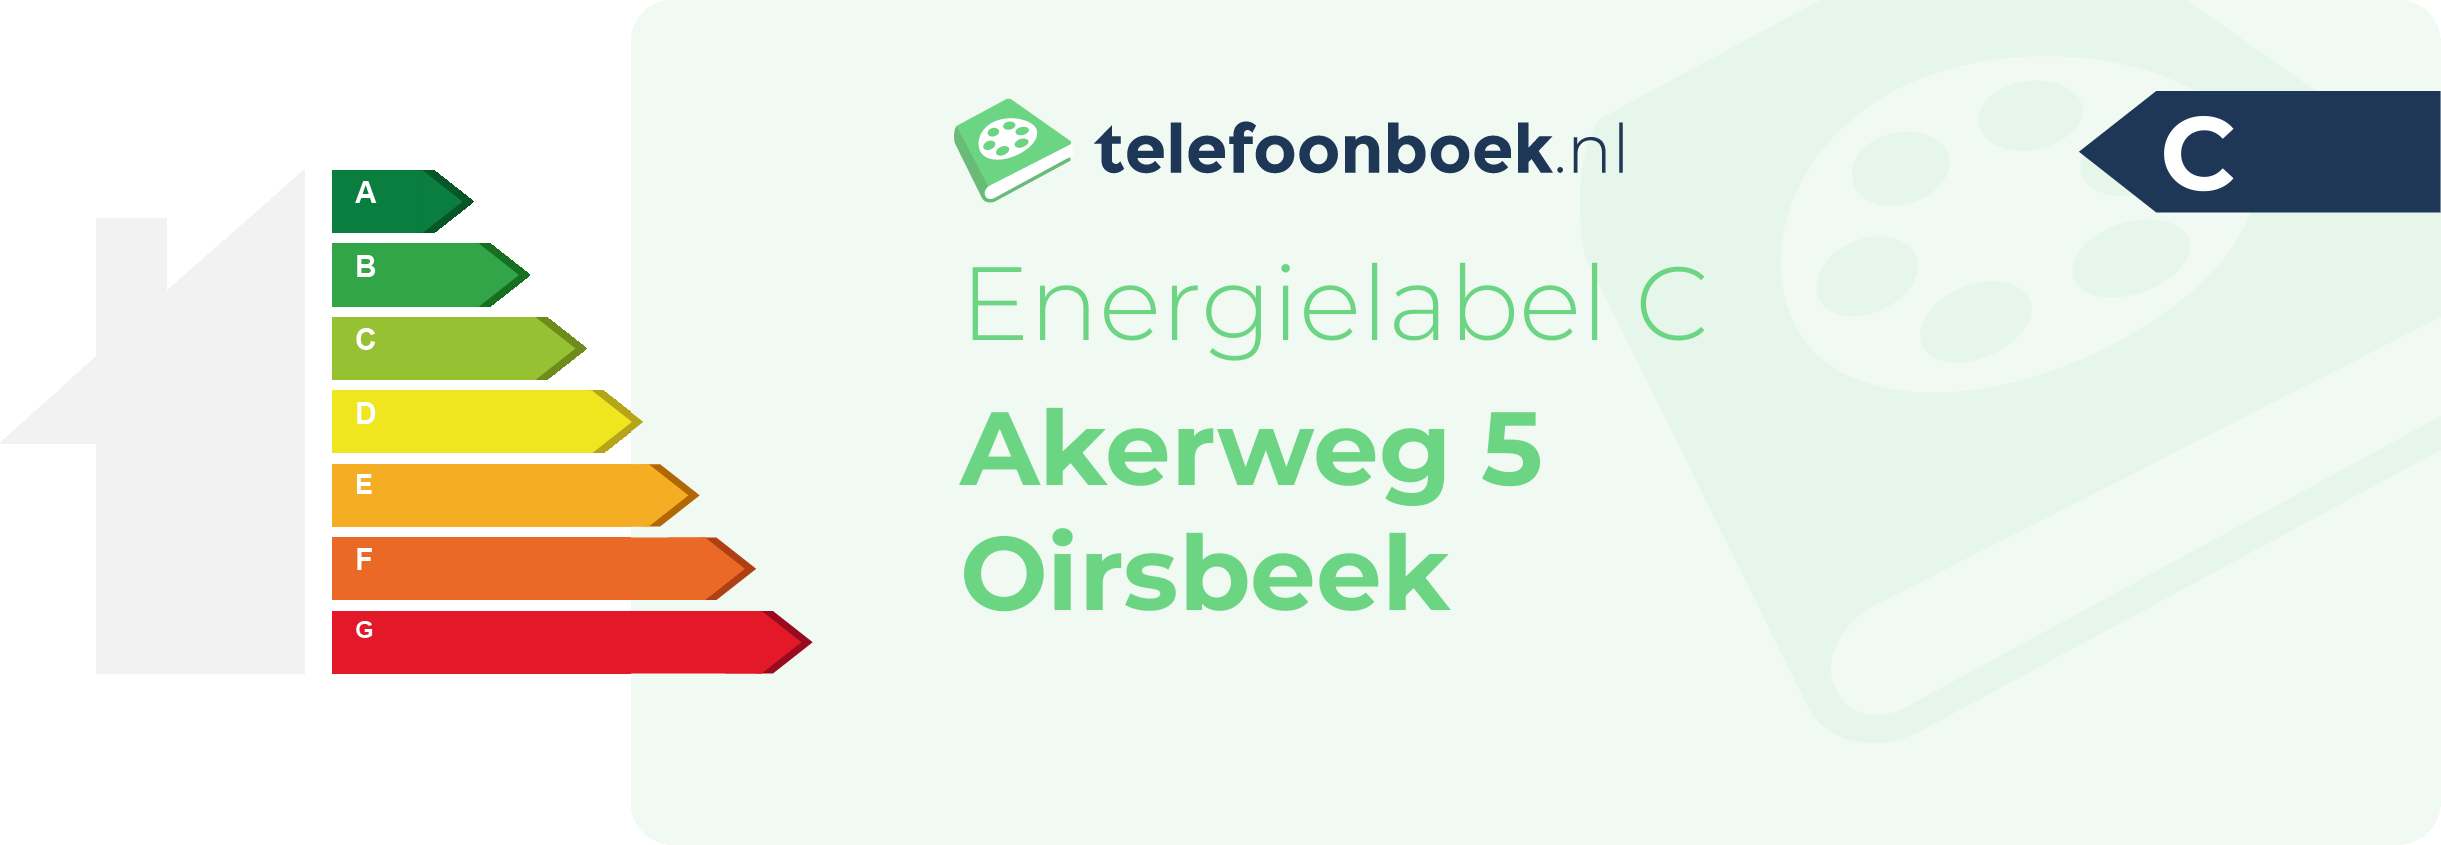 Energielabel Akerweg 5 Oirsbeek